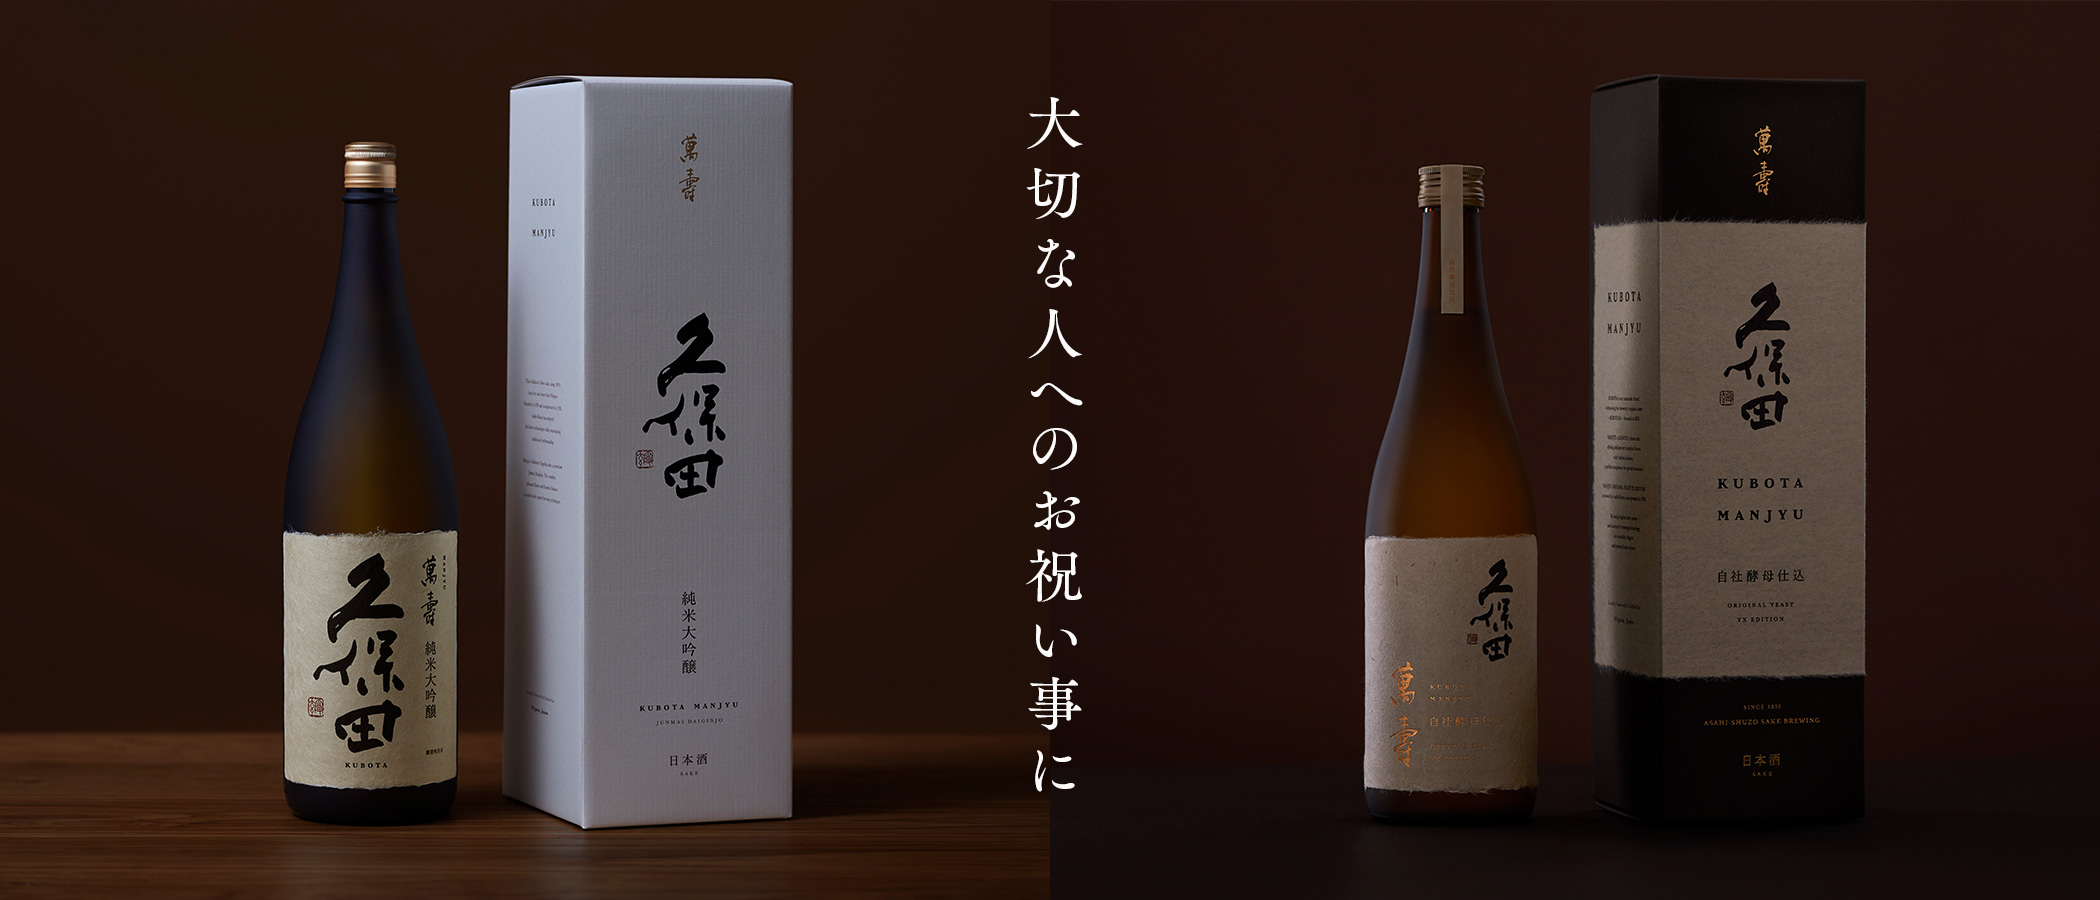 お祝い事におすすめの日本酒